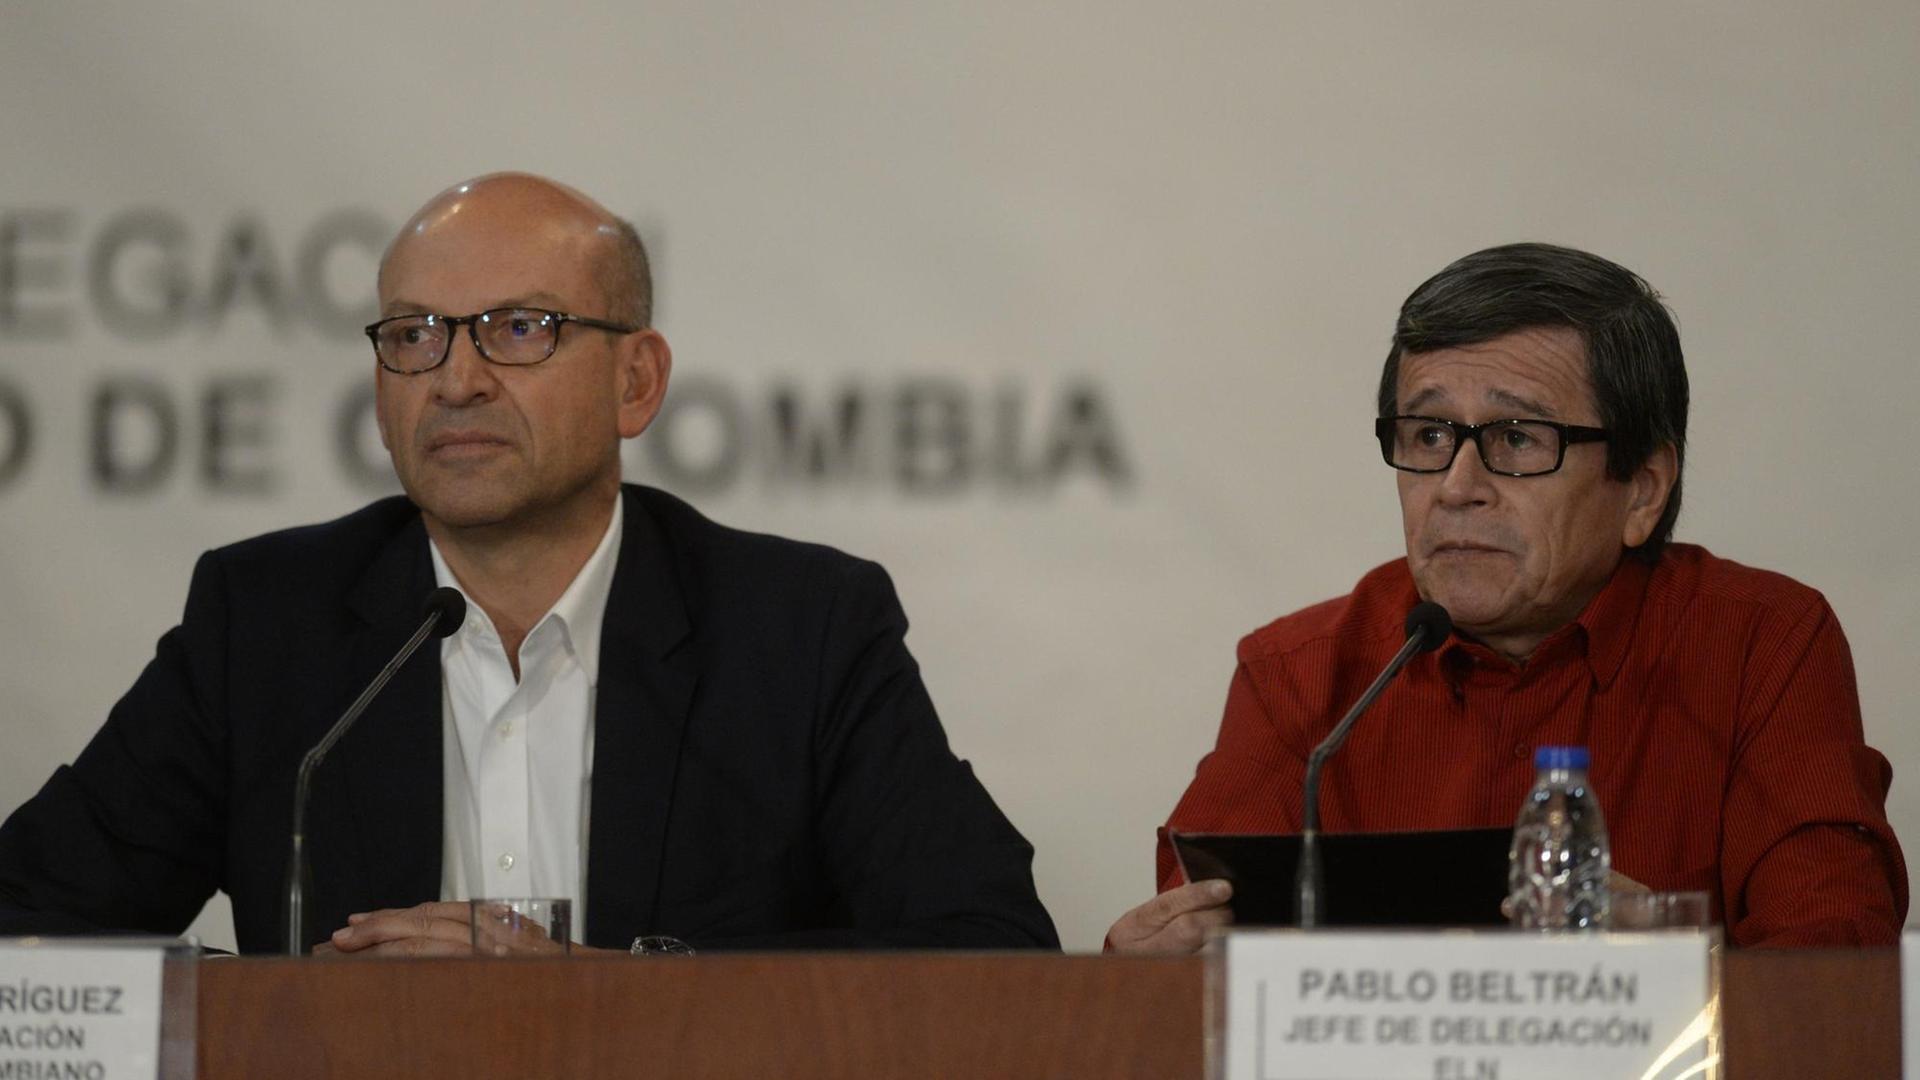 Der Regierungsvertreter Mauricio Rodriguez und ein Mitglied der ELN-Rebellen, Pablo Beltran, sprechen auf einer Pressekonferenz über die neu aufgenommenen Friedensverhandlungen.